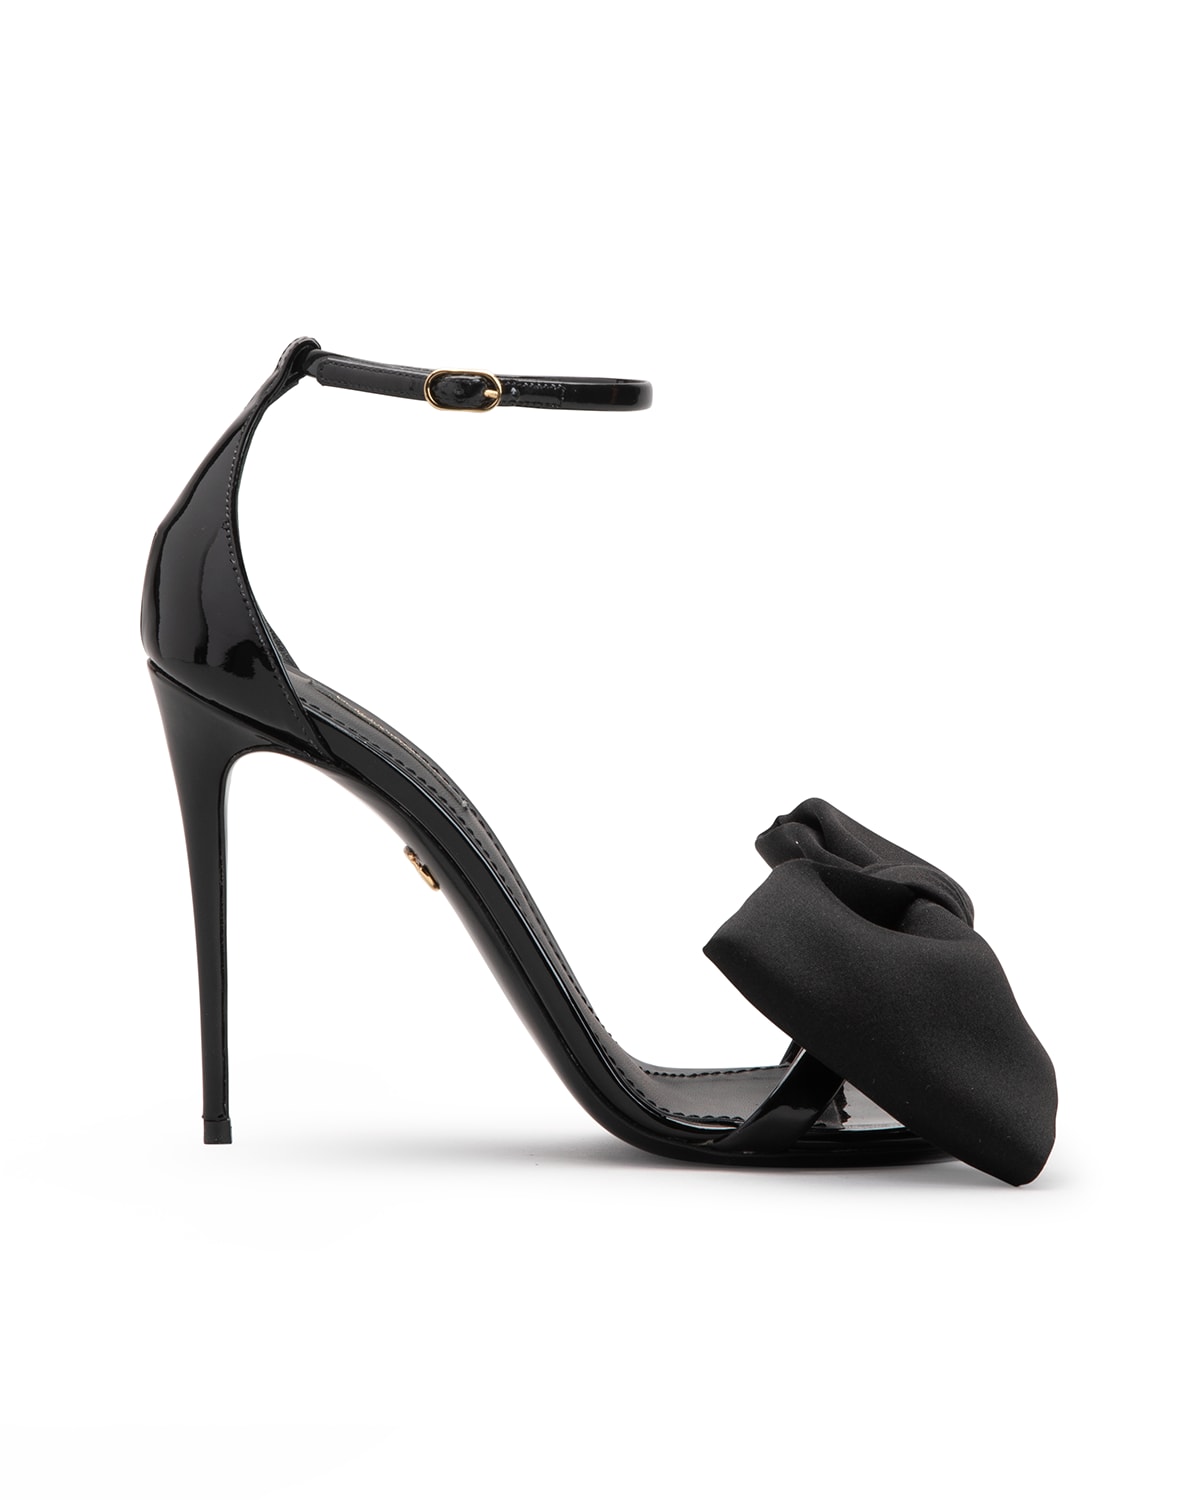 Dolce & Gabbana 105mm Bow Satin Sandals